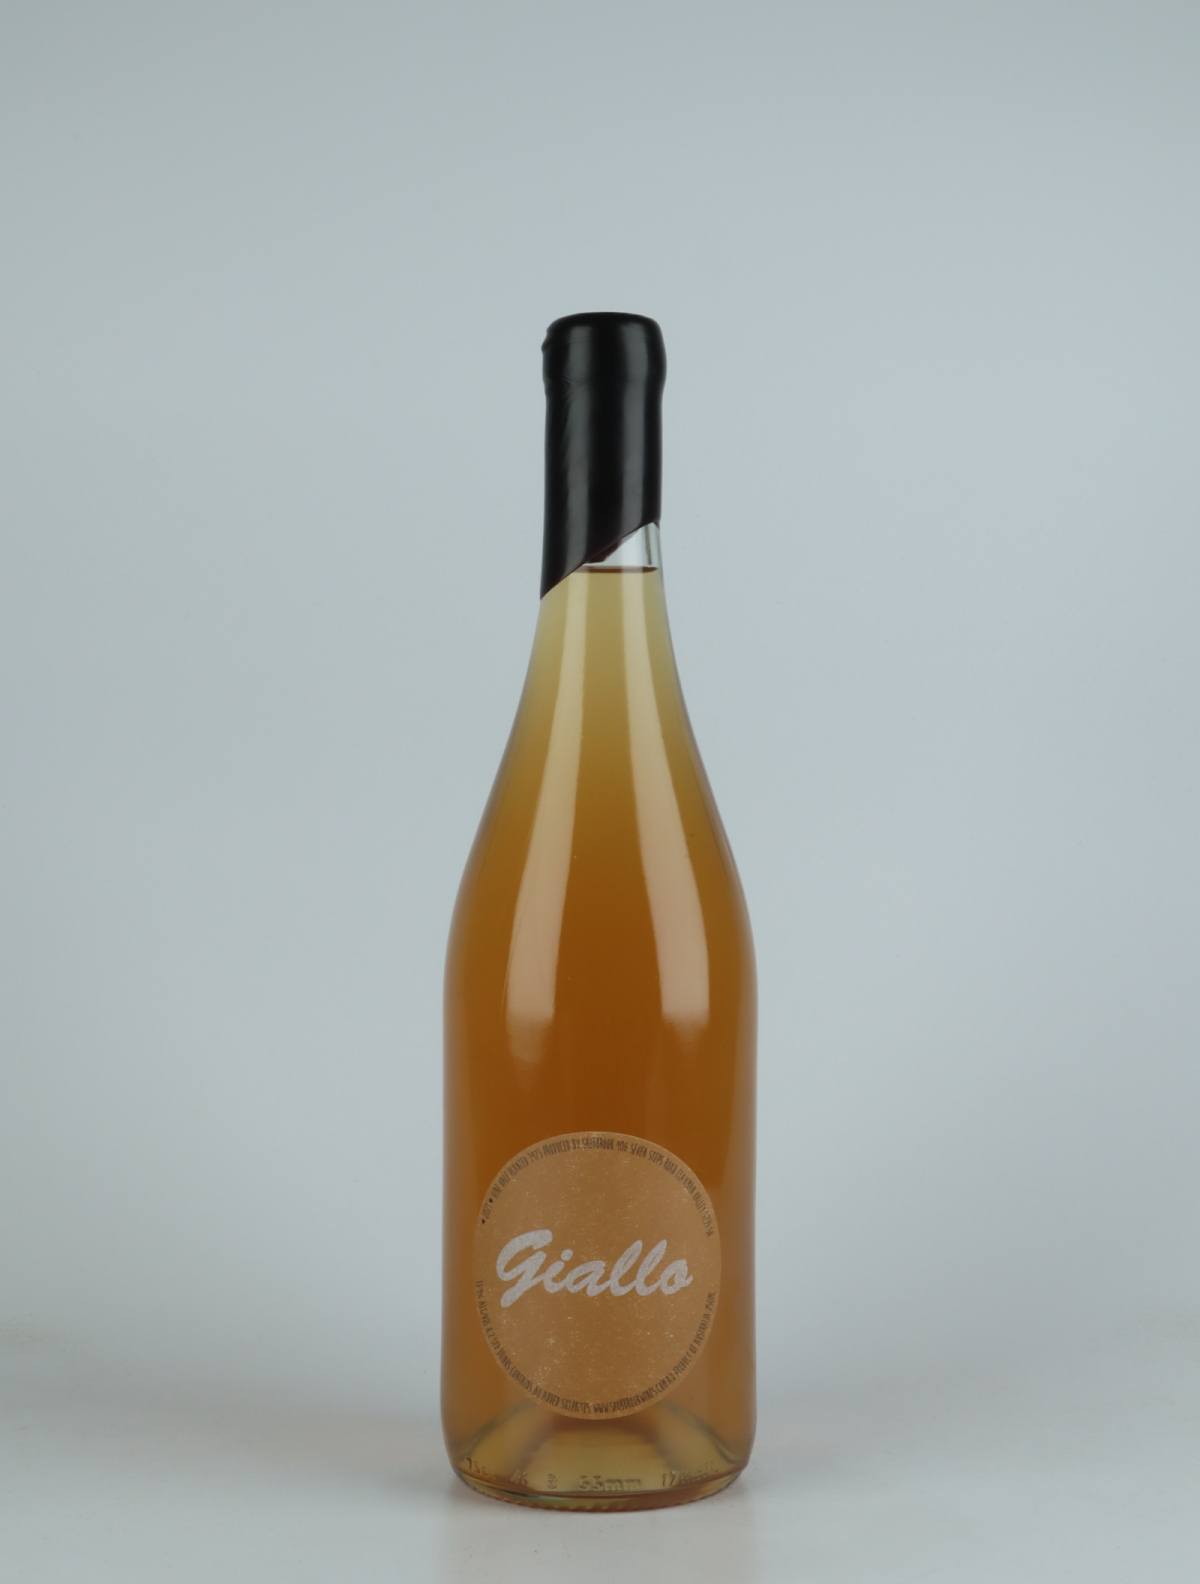 A bottle 2021 Giallo Orange wine from Tom Shobbrook, Adelaide Hills in Australia